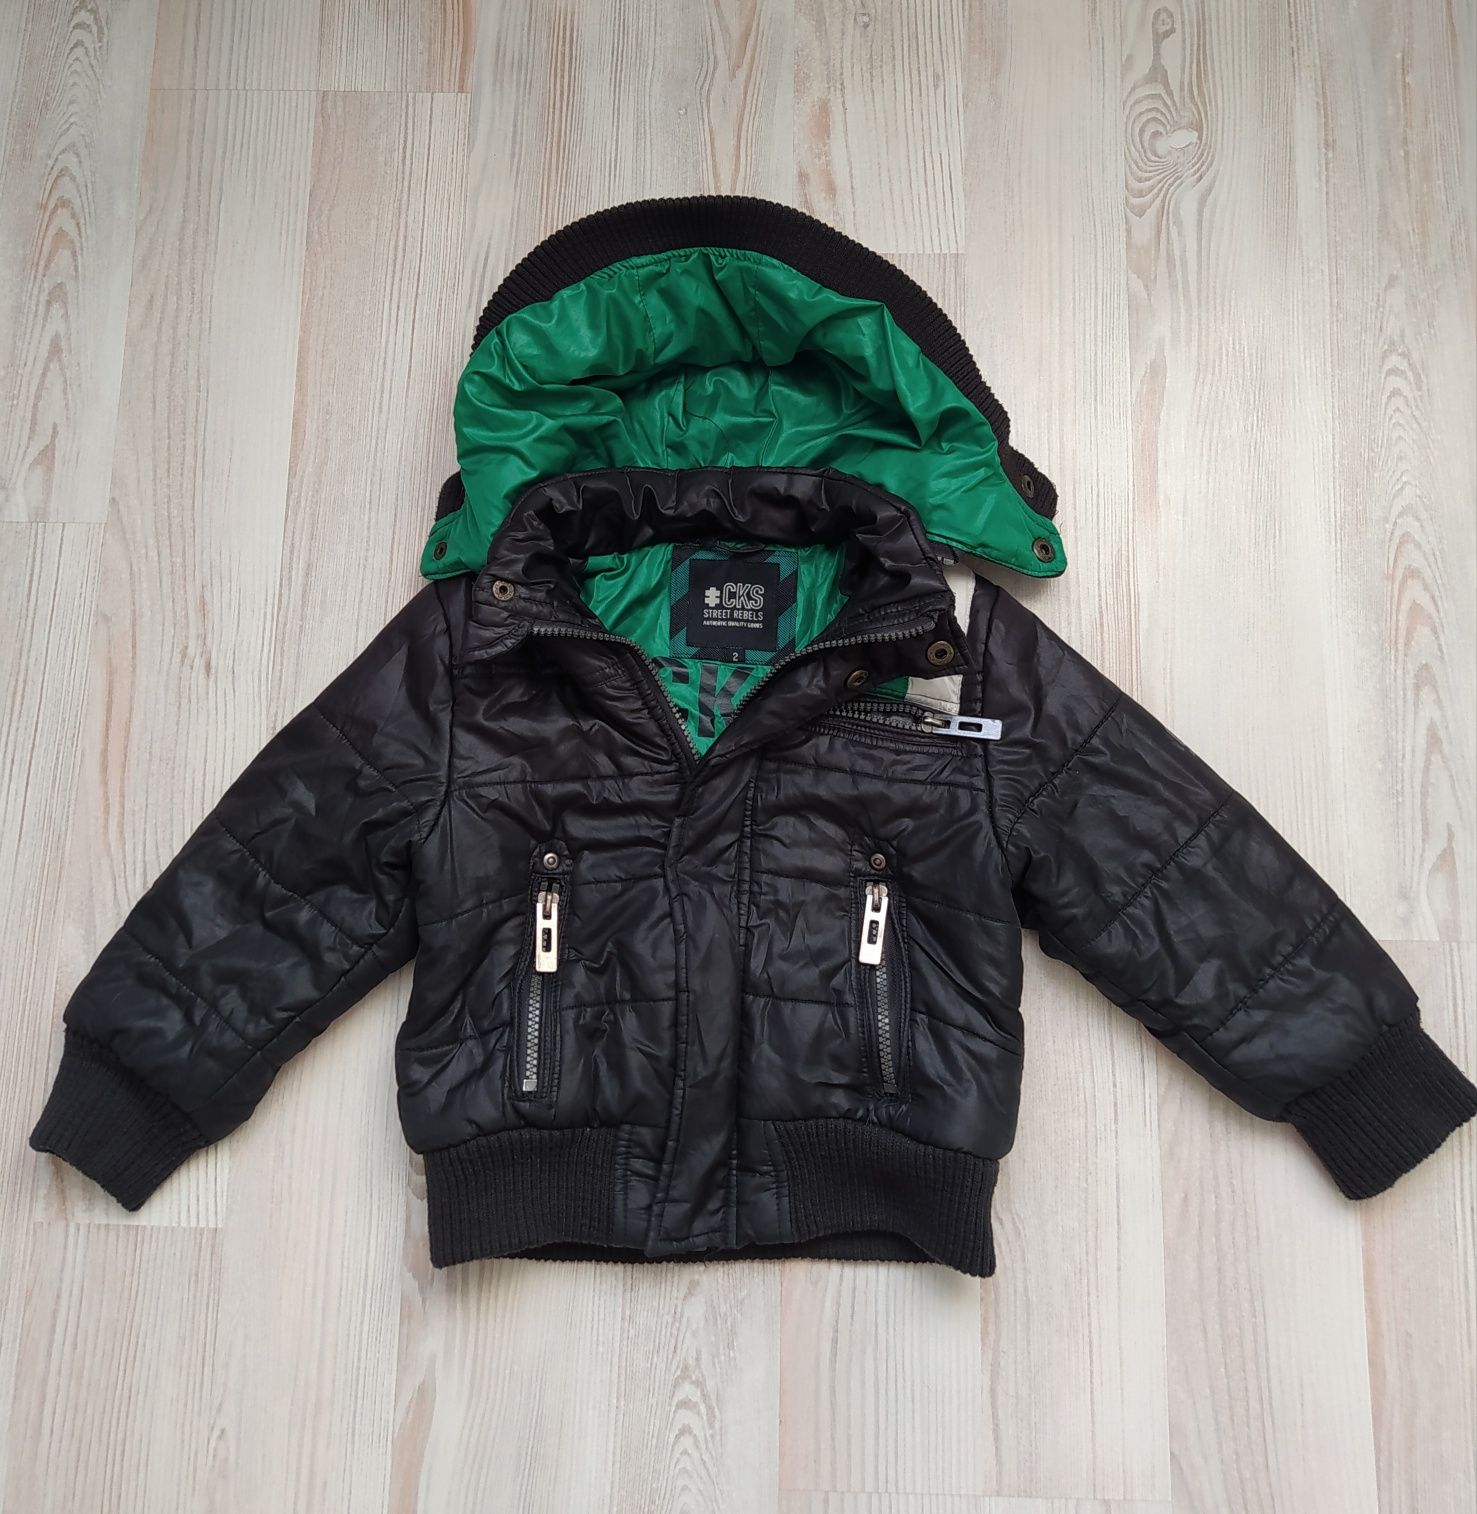 Детская демисезонная куртка курточка CKS на ребенка 1,5-2года